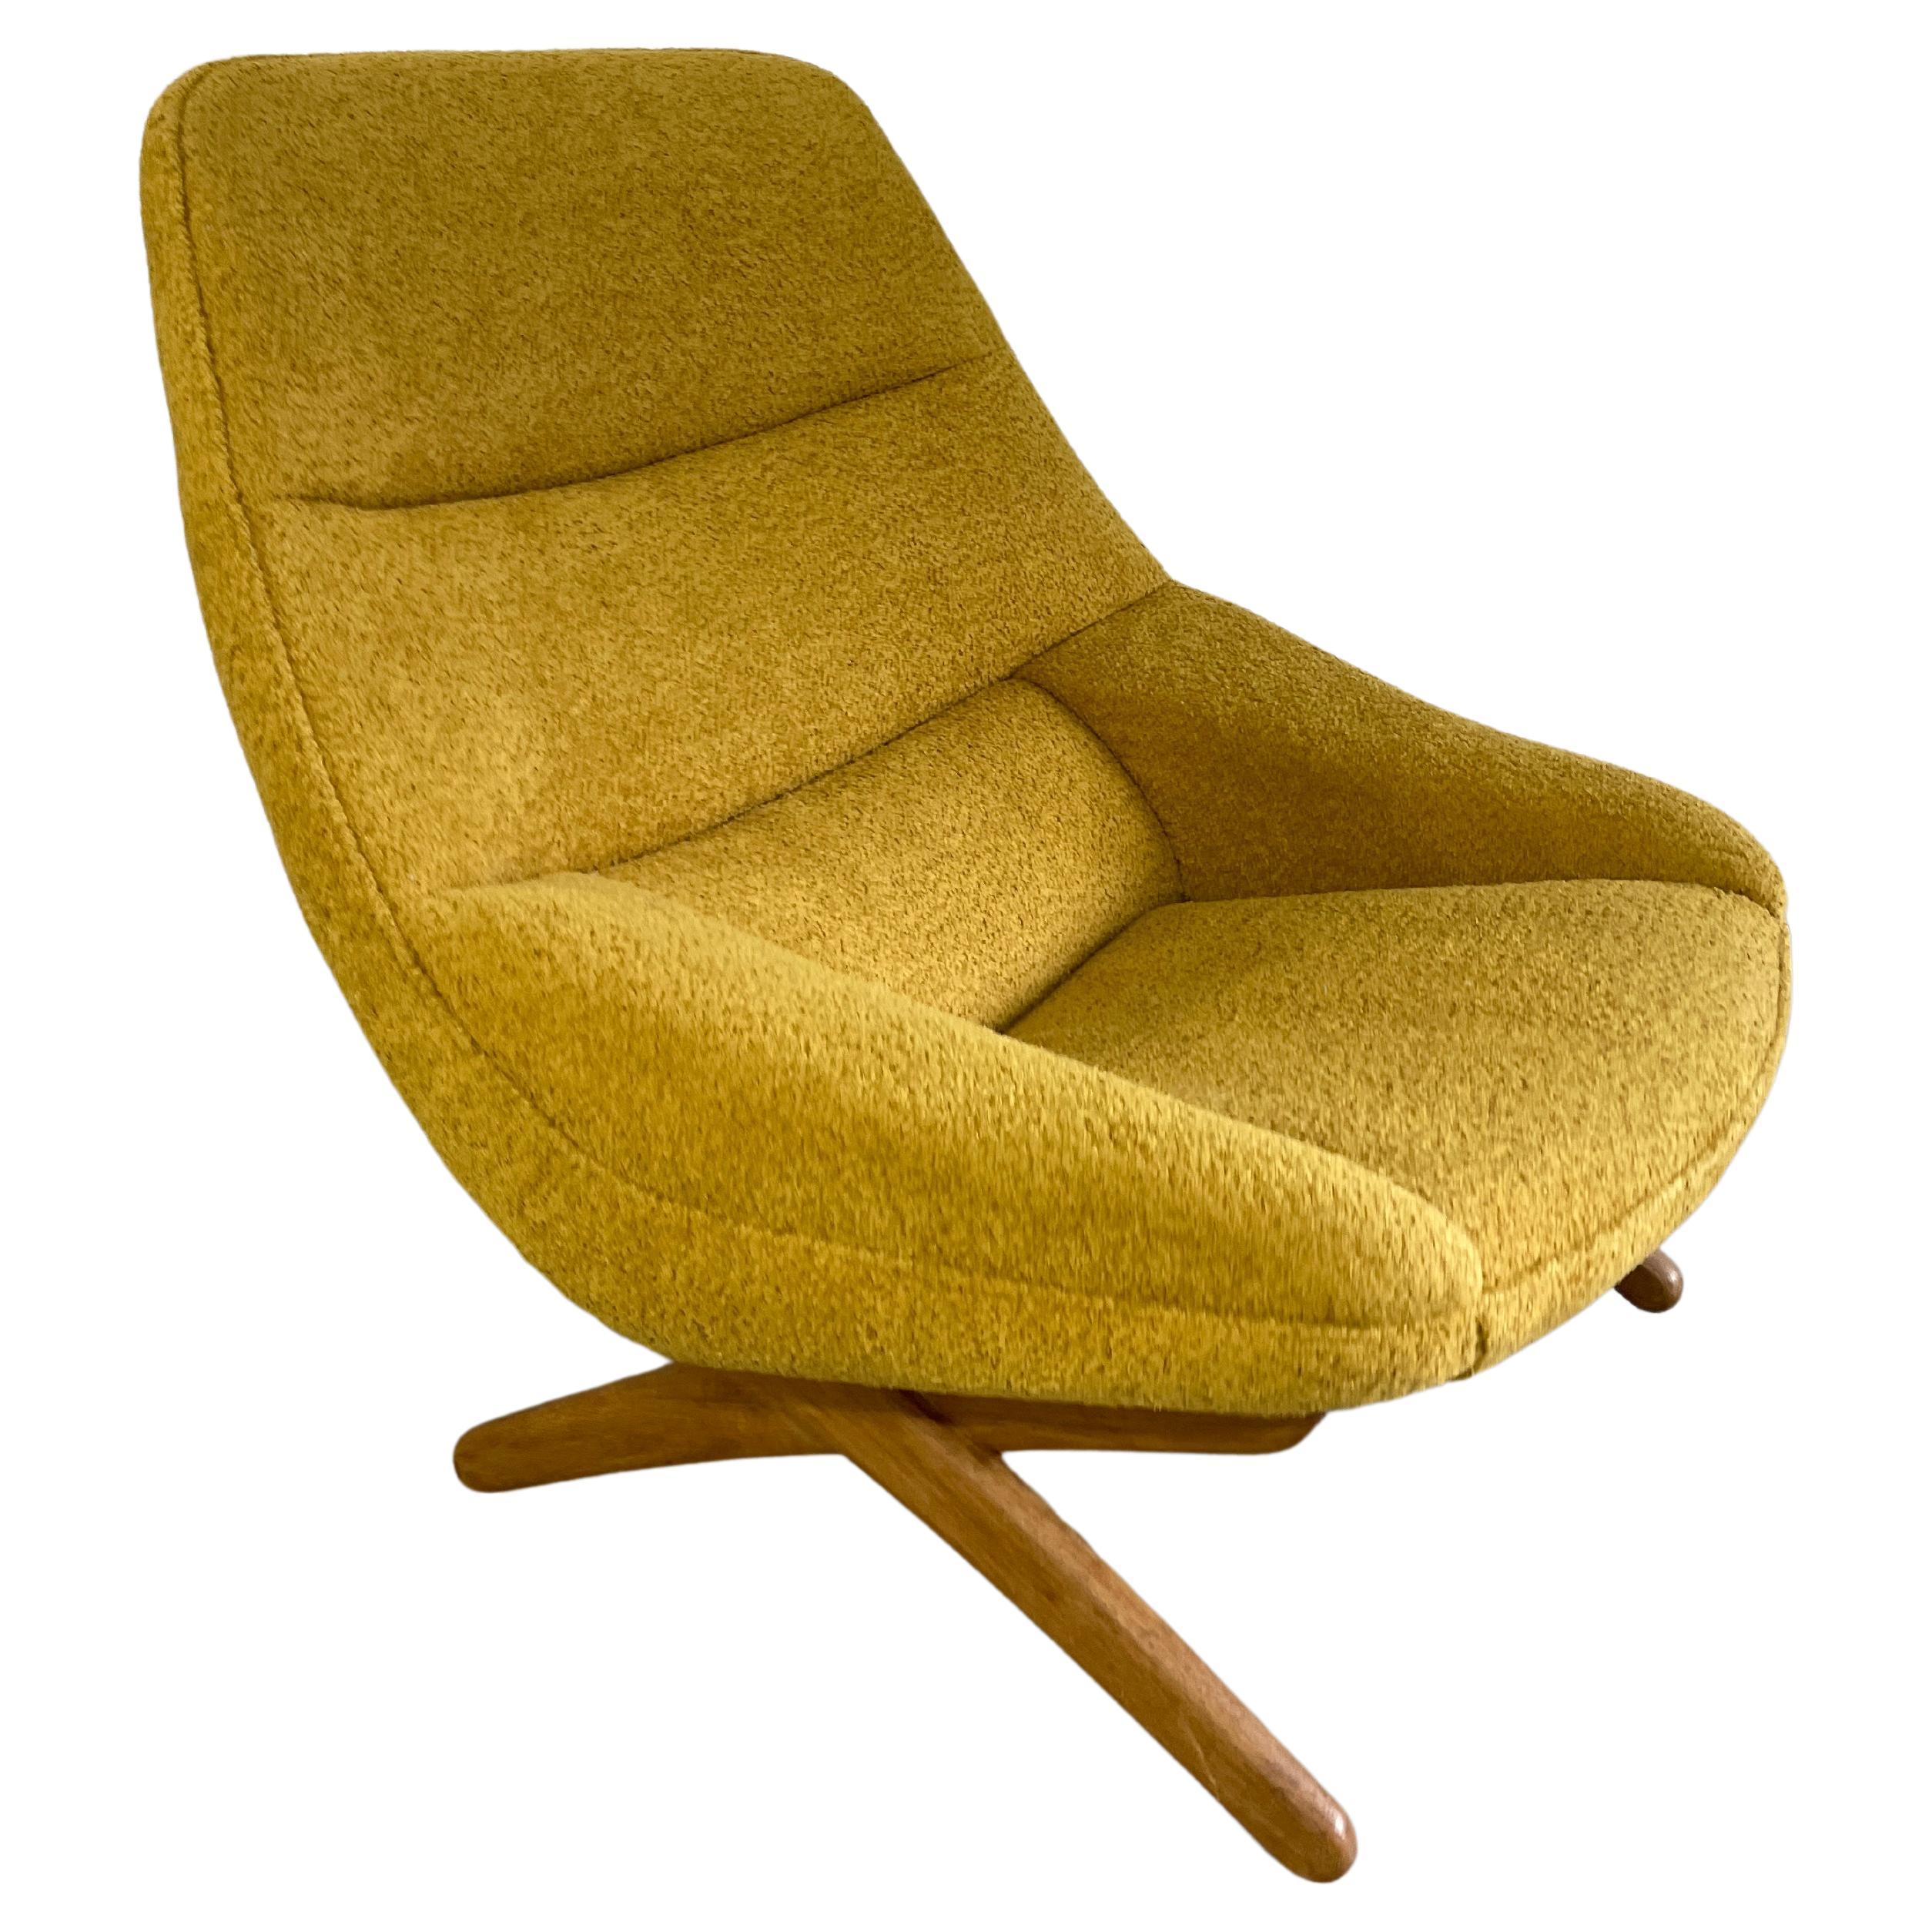 Illum Wikkelso Model Ml91 Danish Modern Lounge Chair